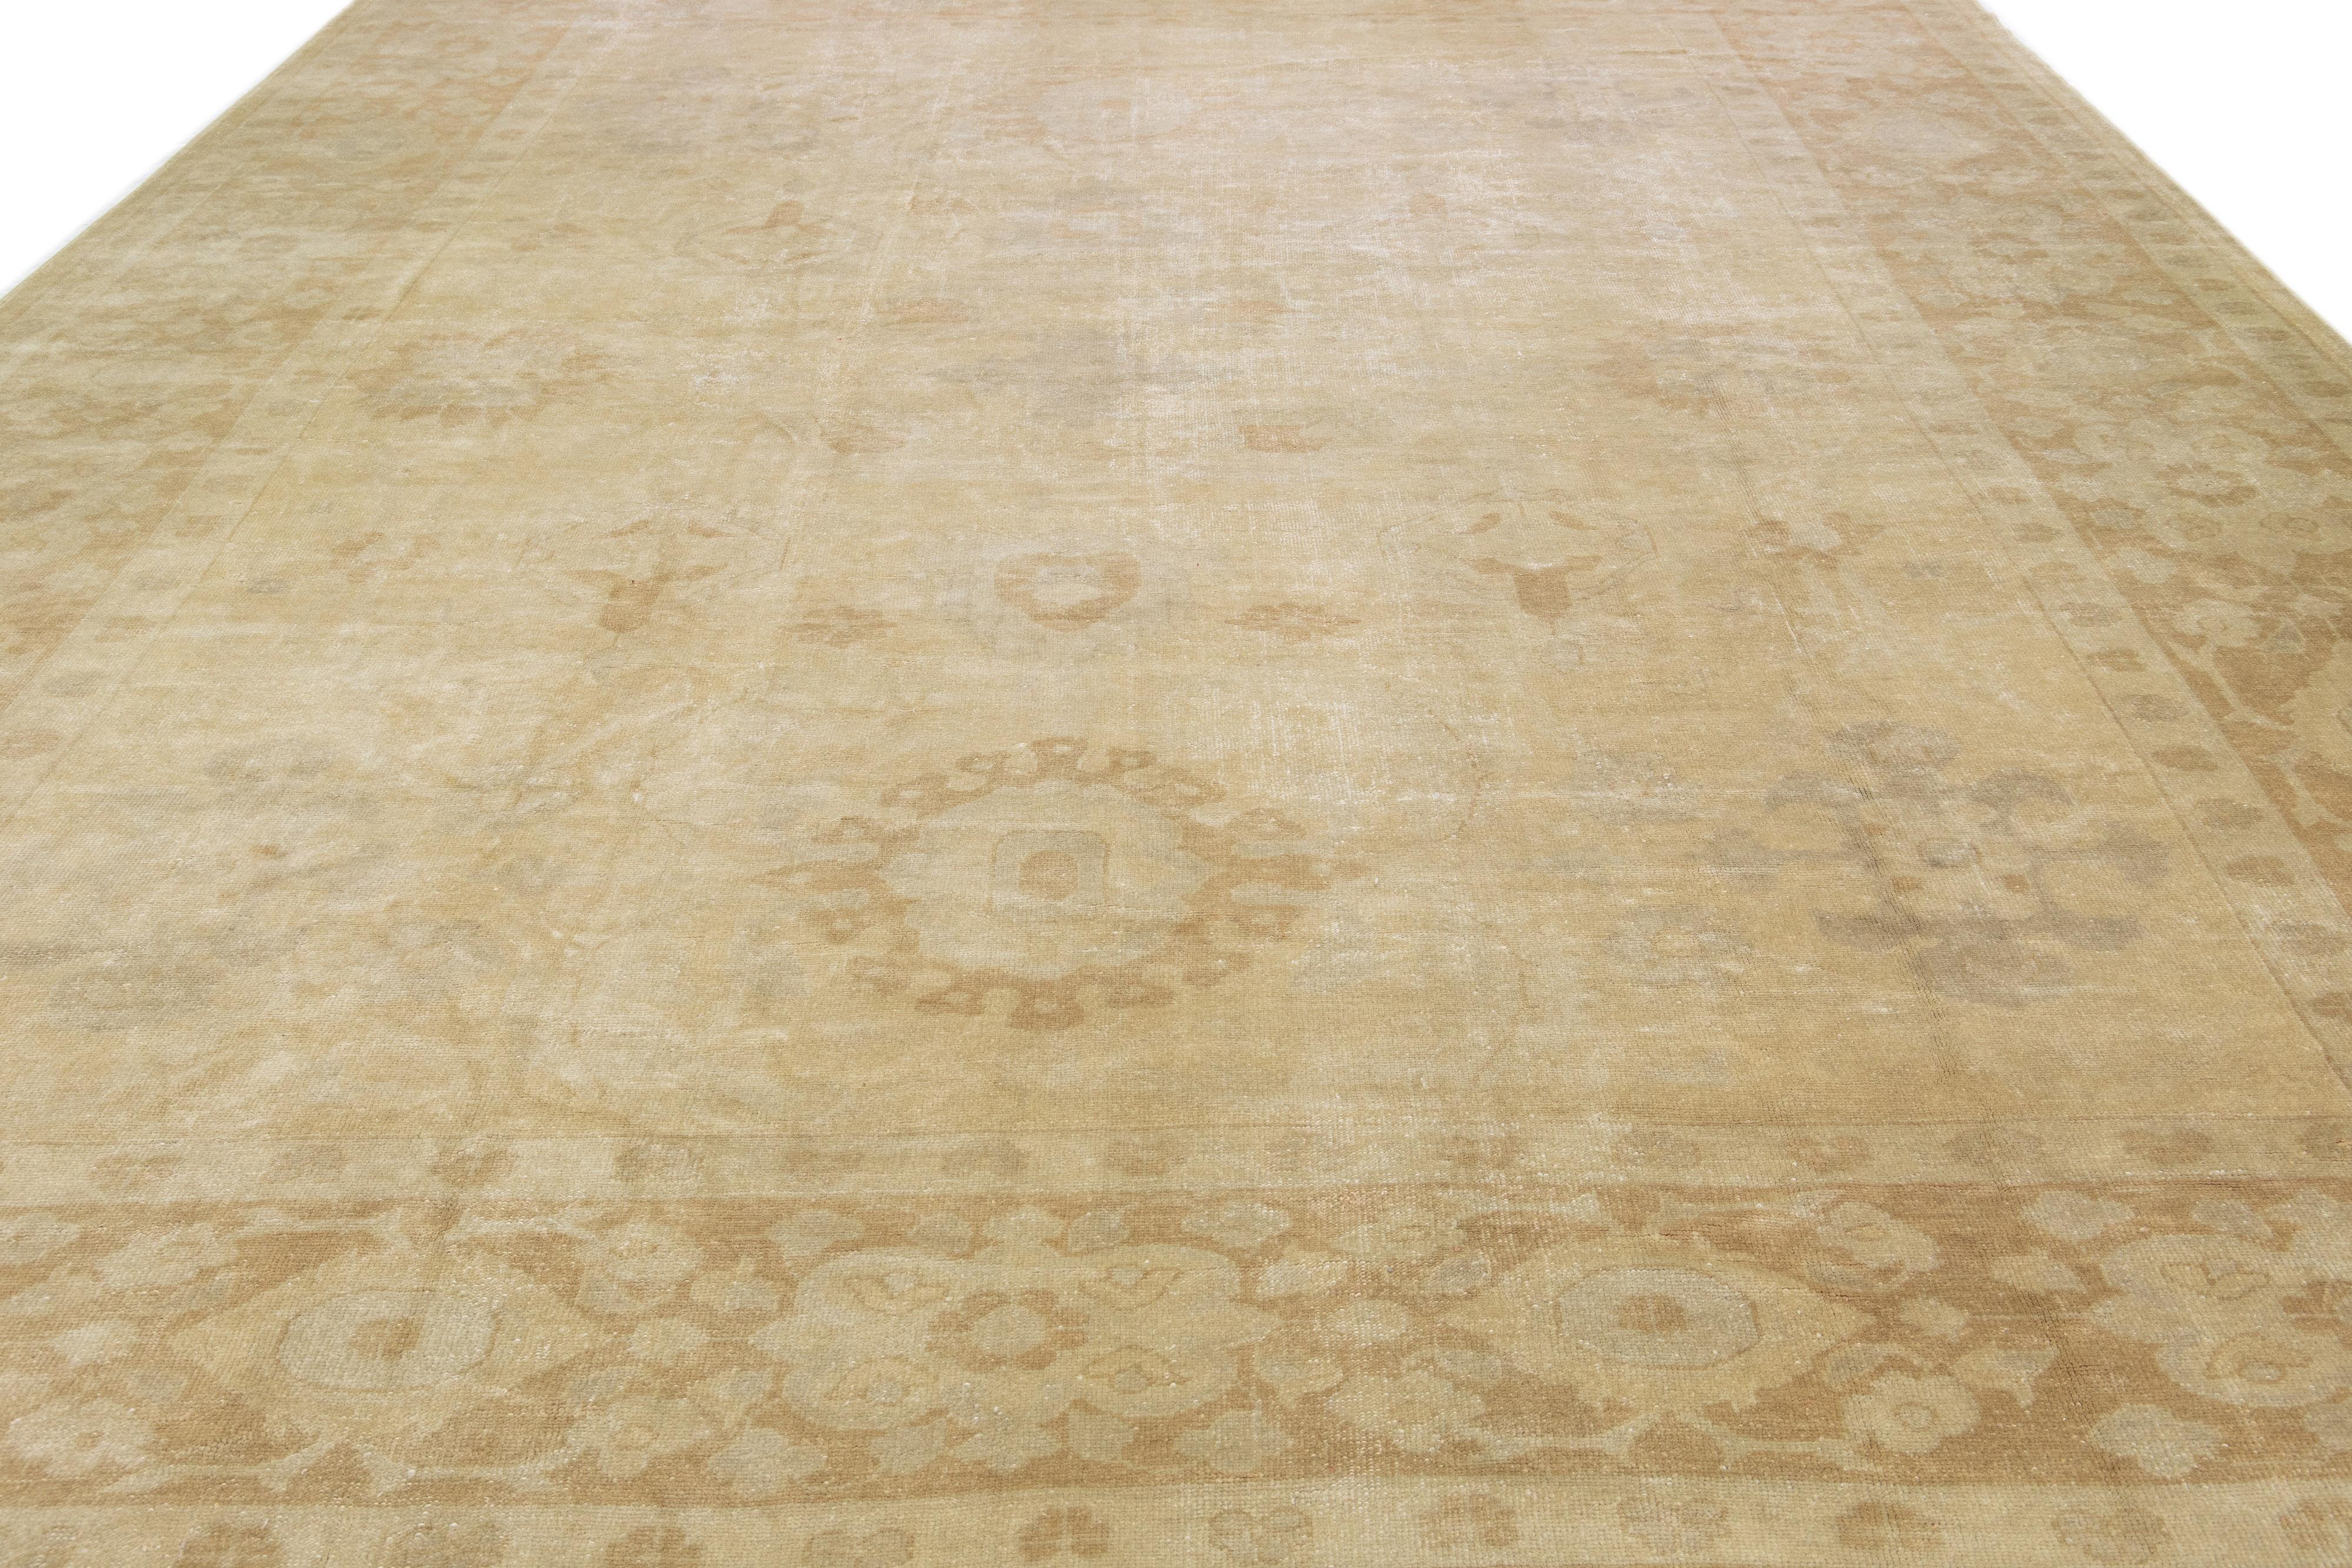 Dieser Oushak-Teppich aus Wolle aus der Türkei präsentiert einen zeitgenössischen Stil und zeigt ein verführerisches Blumenmotiv in gedämpften Grau- und Beigetönen.

Dieser Teppich misst 13'3 